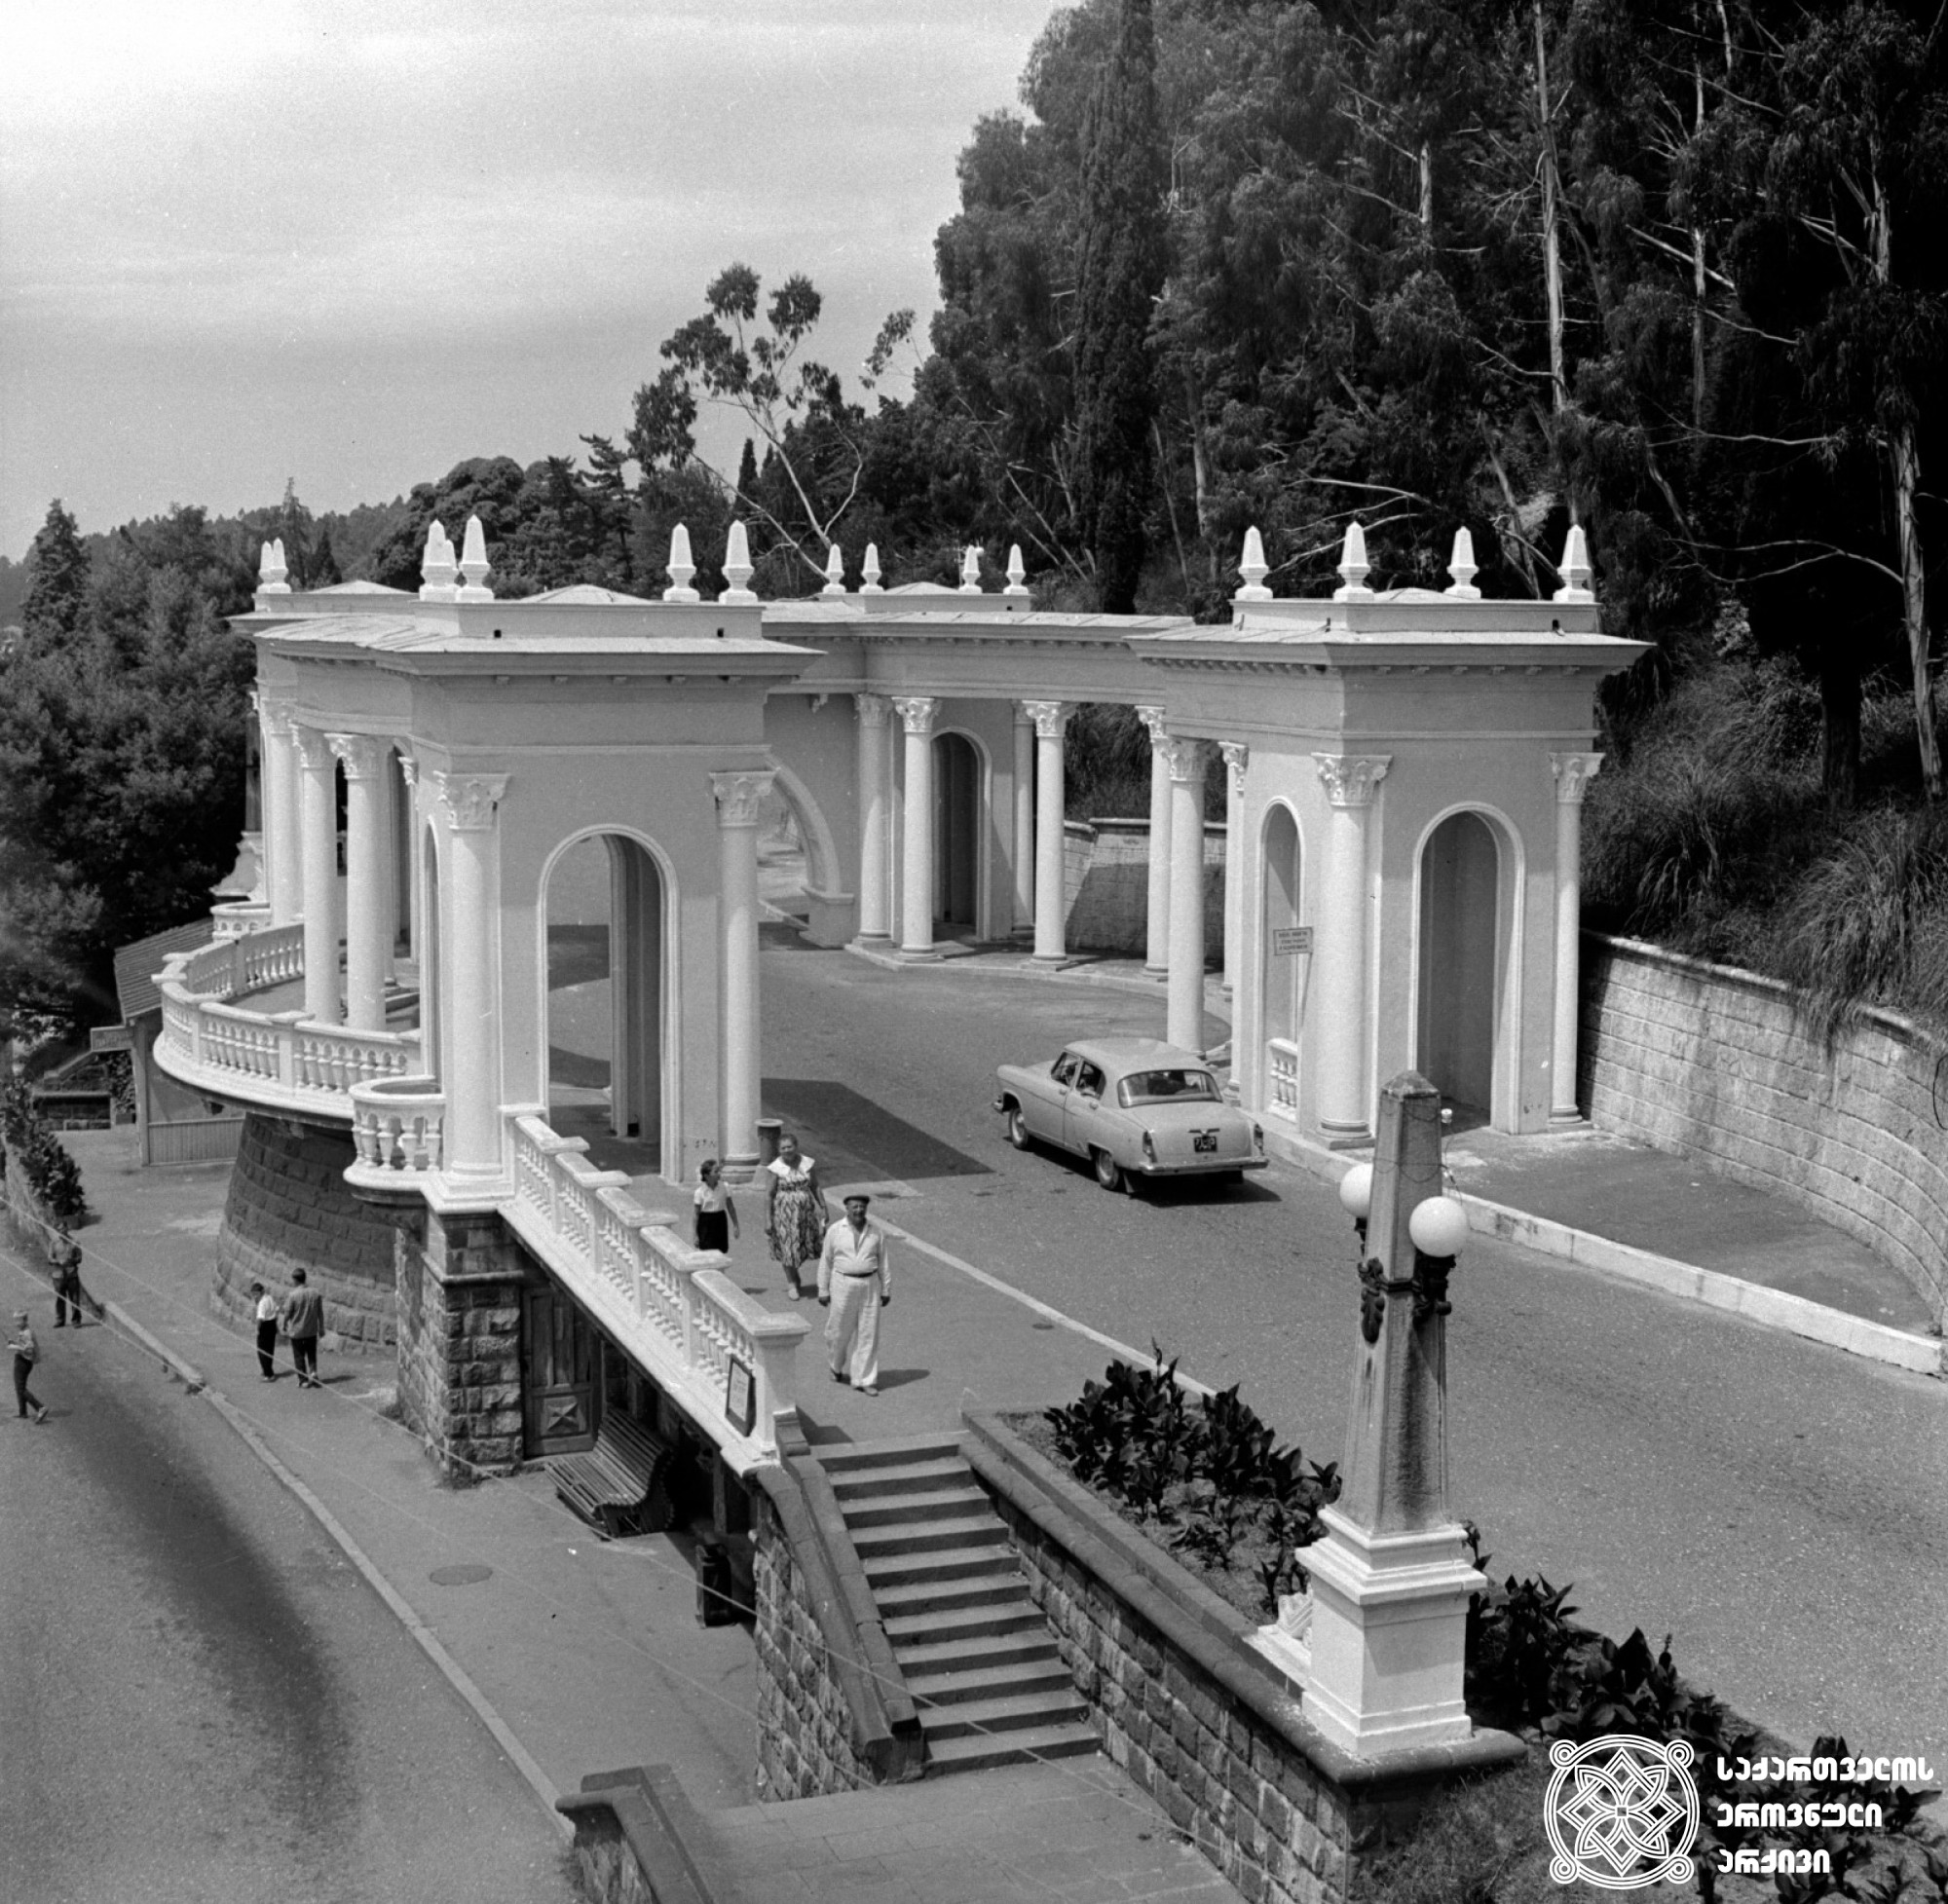 კოლონადა სოხუმში <br>
1968 წელი <br>
 ფოტოს ავტორი ს. თევზაძე <br>
Colonnade in Sokhumi <br>
1968 <br>
 Photo by S. Tevzadze <br>